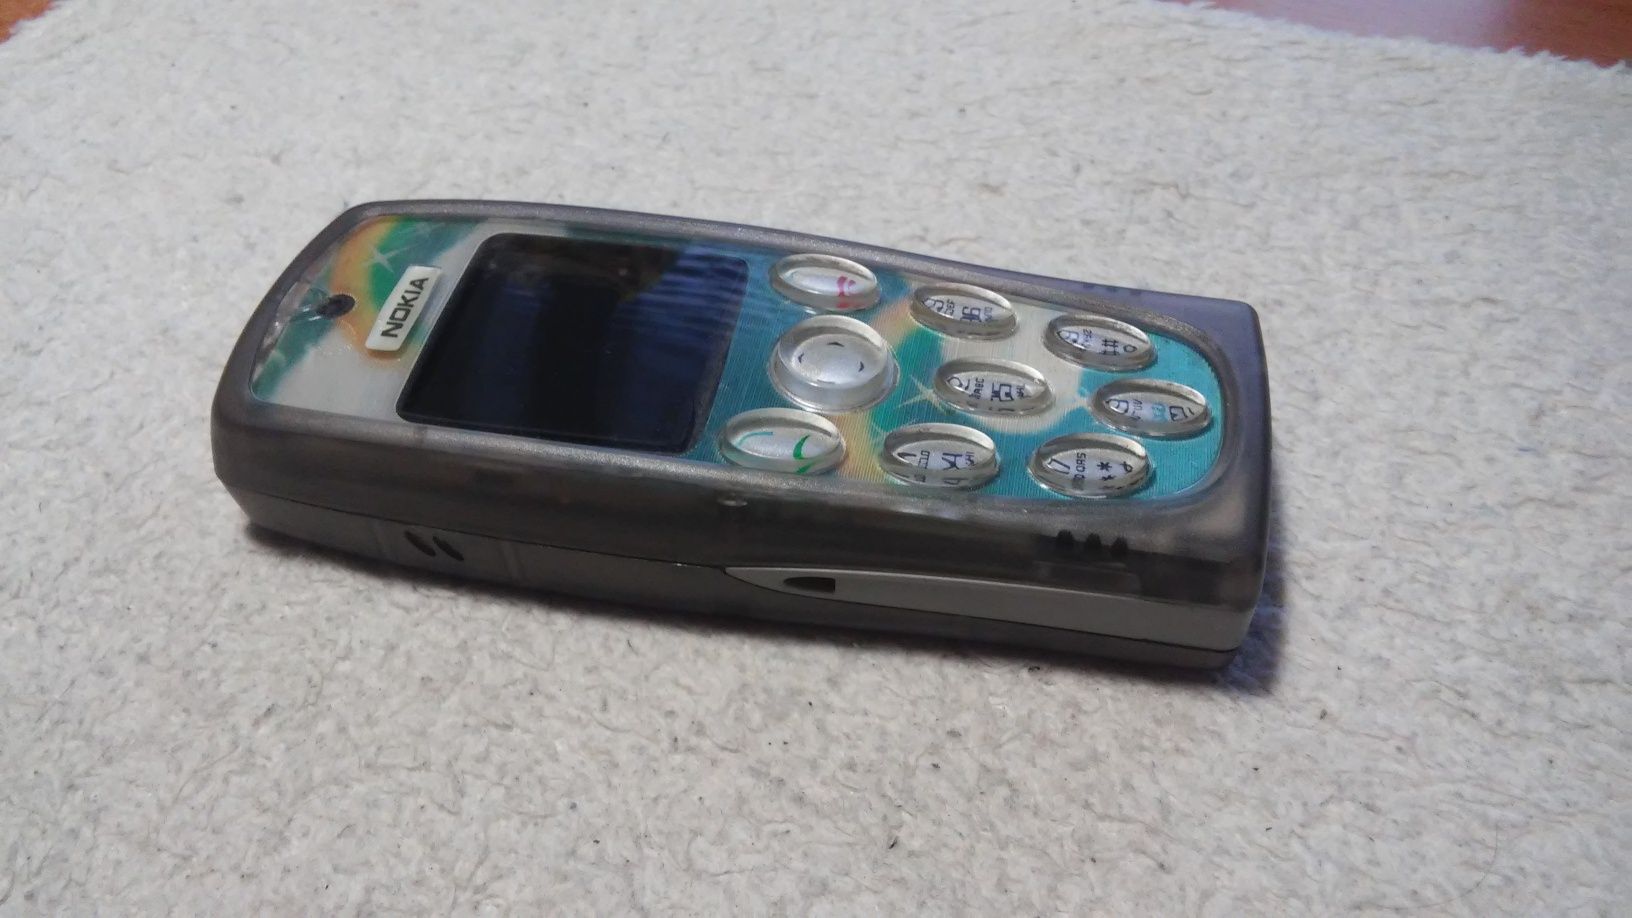 Nokia 3200 Original